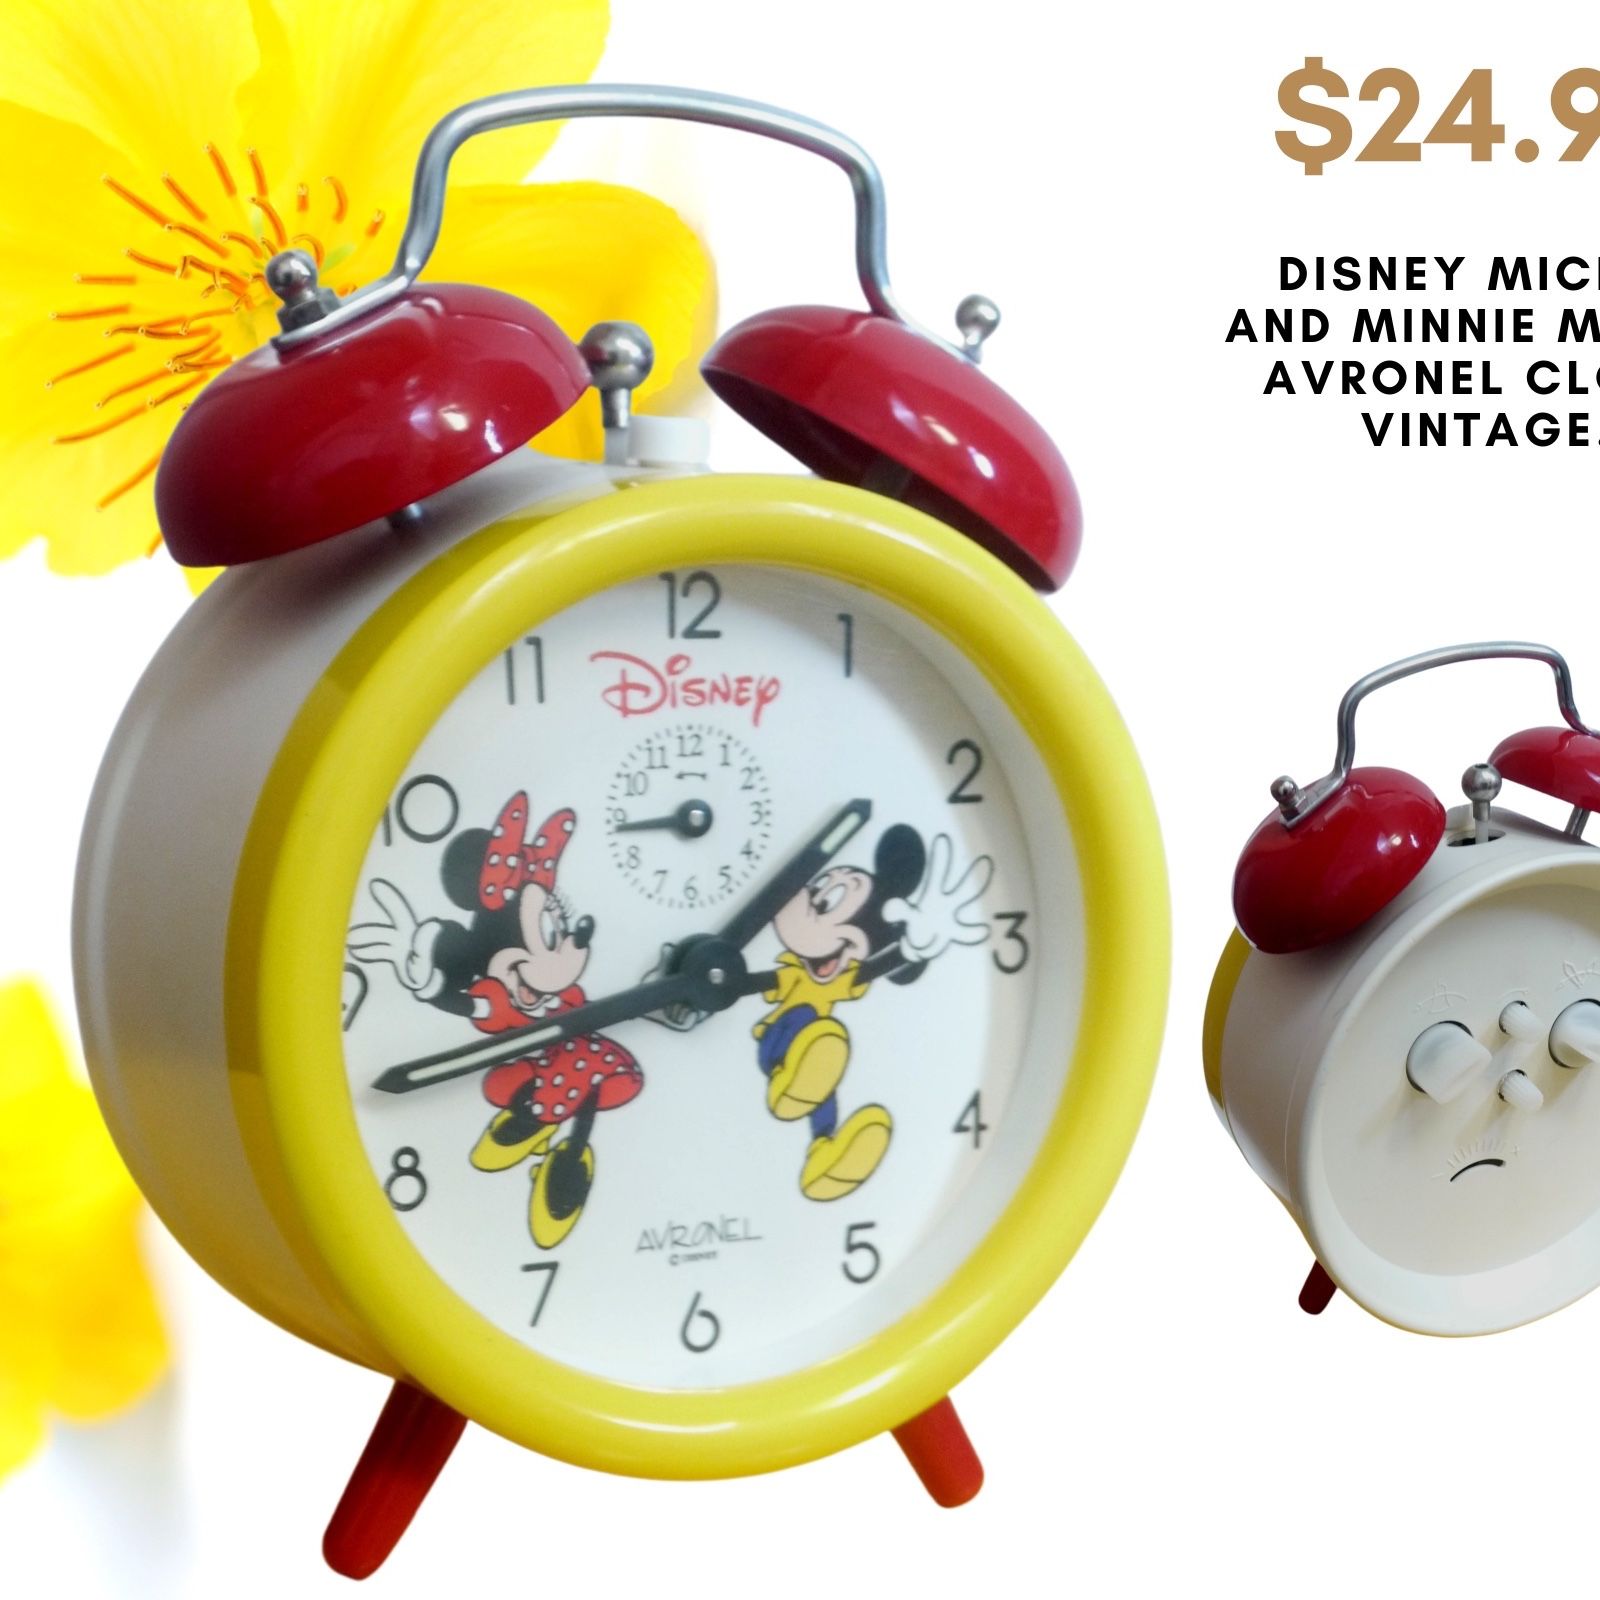 Aveonel Disney Mickey Vintage Clock